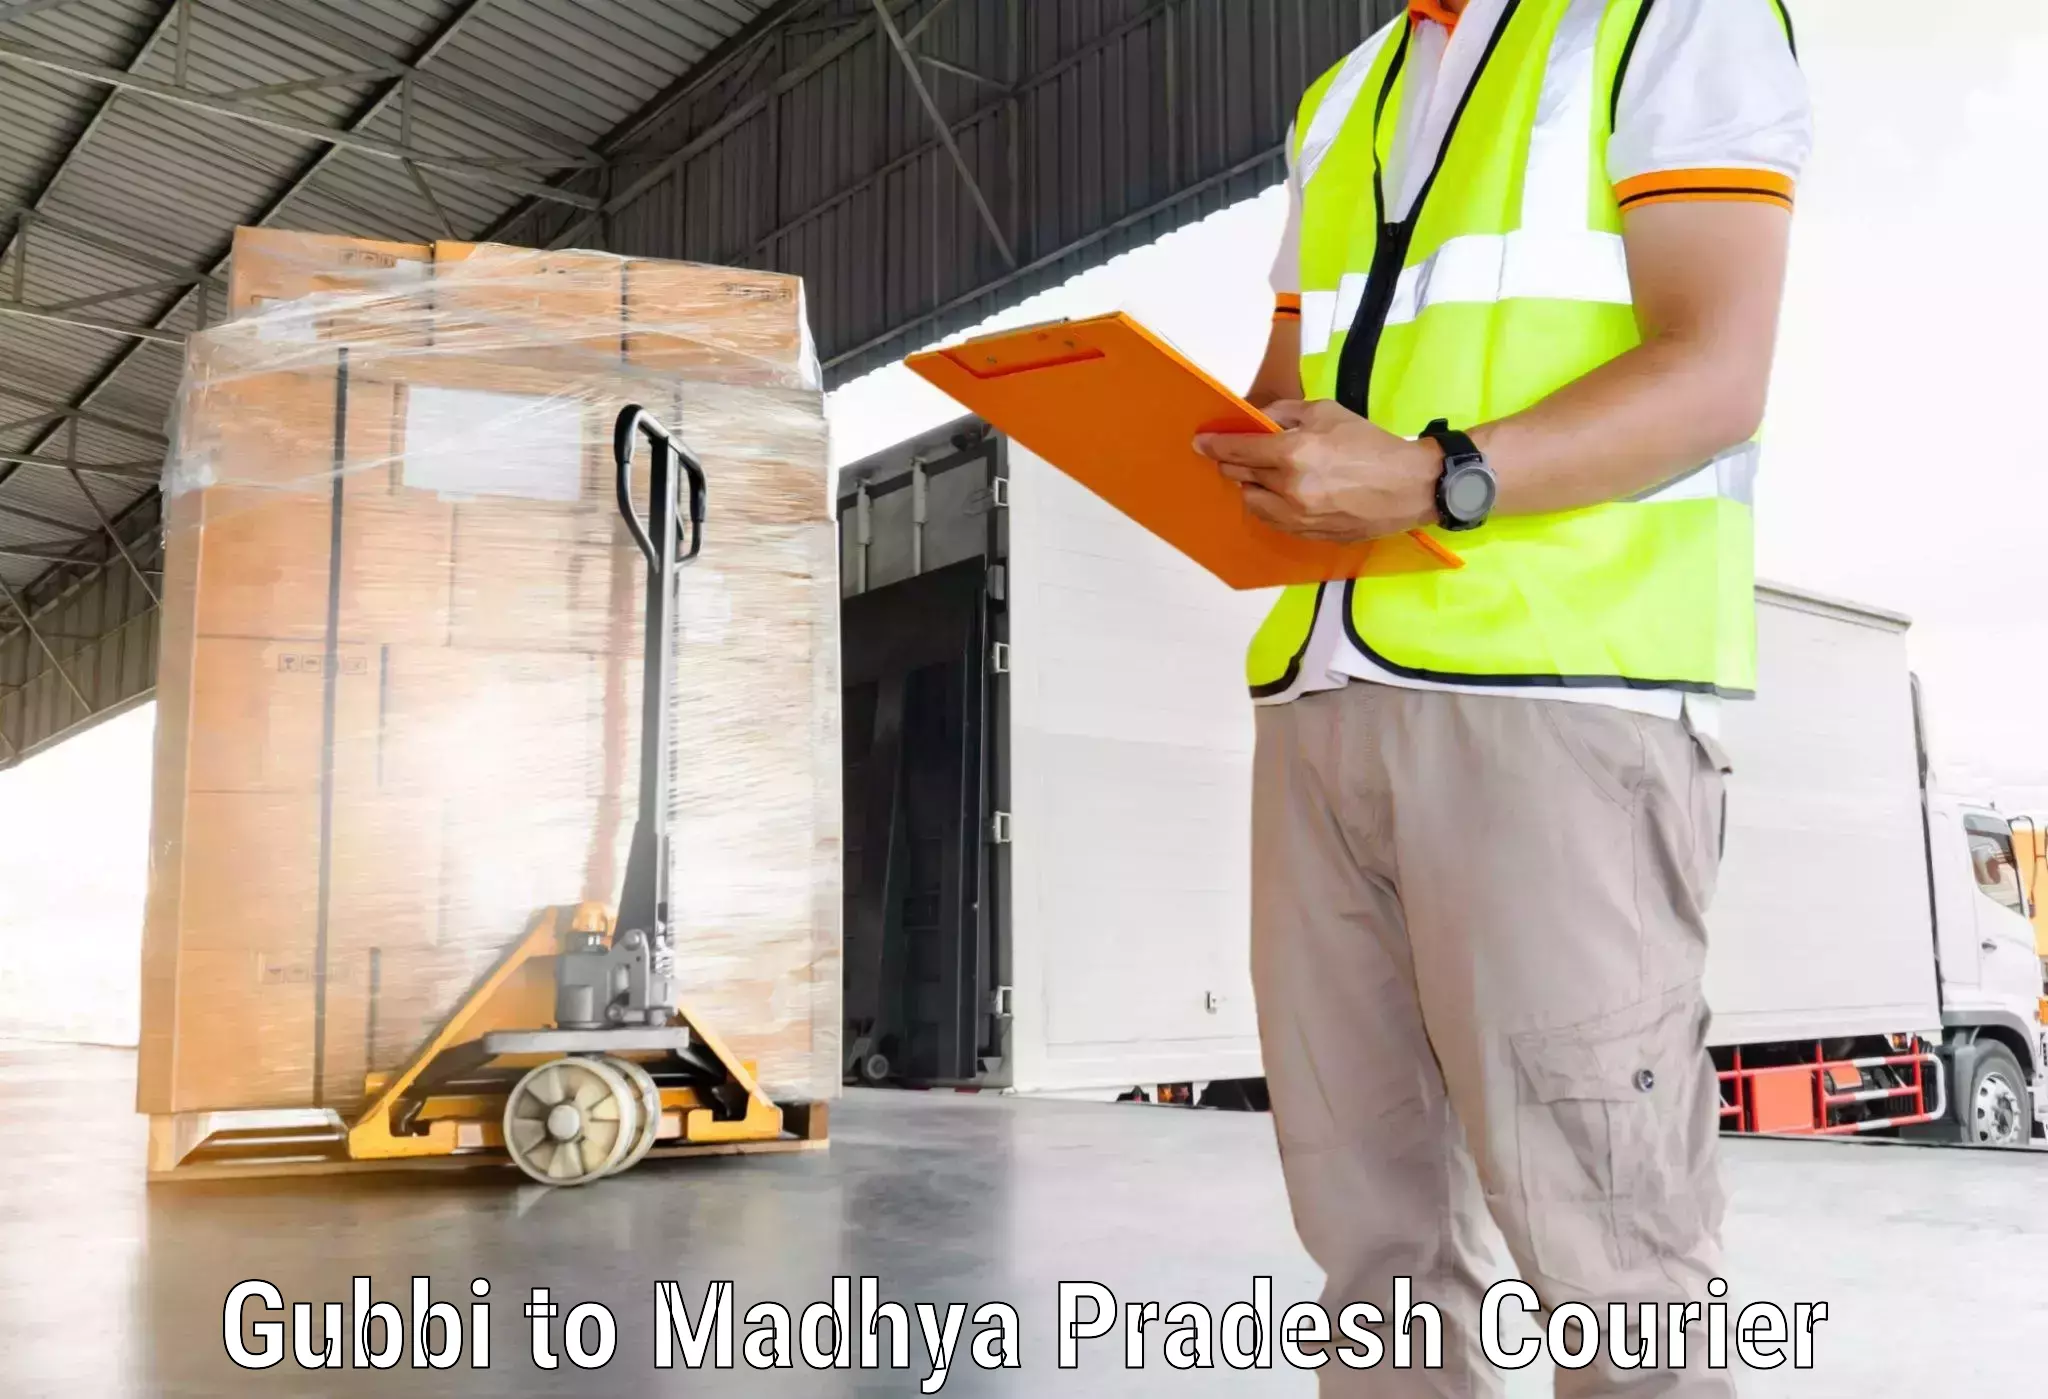 Premium courier services Gubbi to Madhya Pradesh